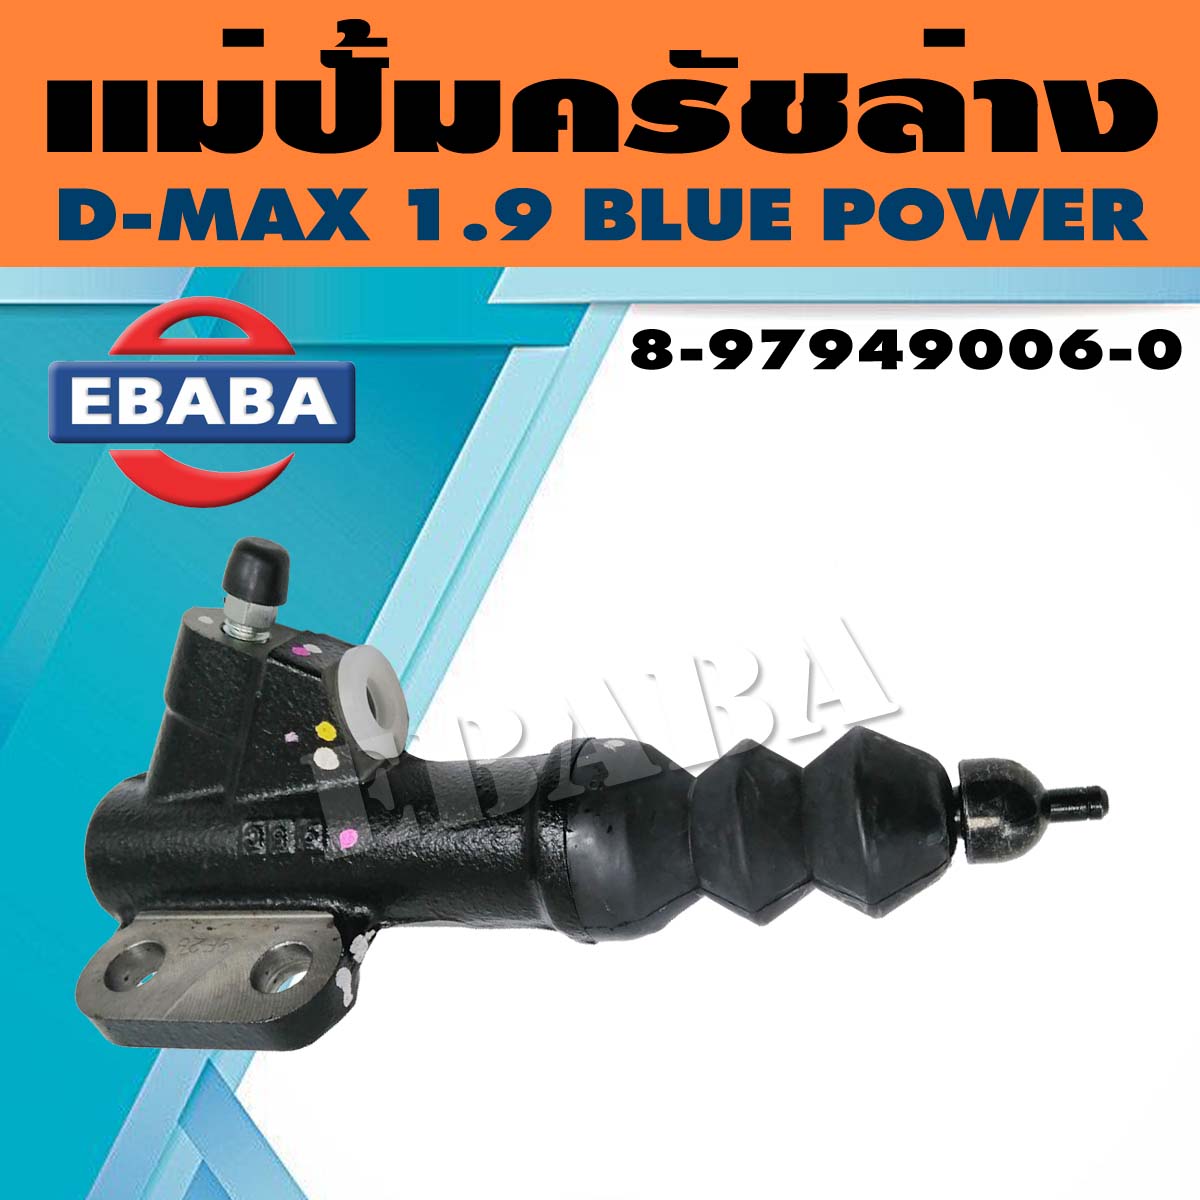 แม่ปั้ม แม่ปั้มครัชล่าง ISUZU D-MAX 1.9 BLUE POWER  รหัสสินค้า 8-97949006-0 แท้เบิกศูนย์